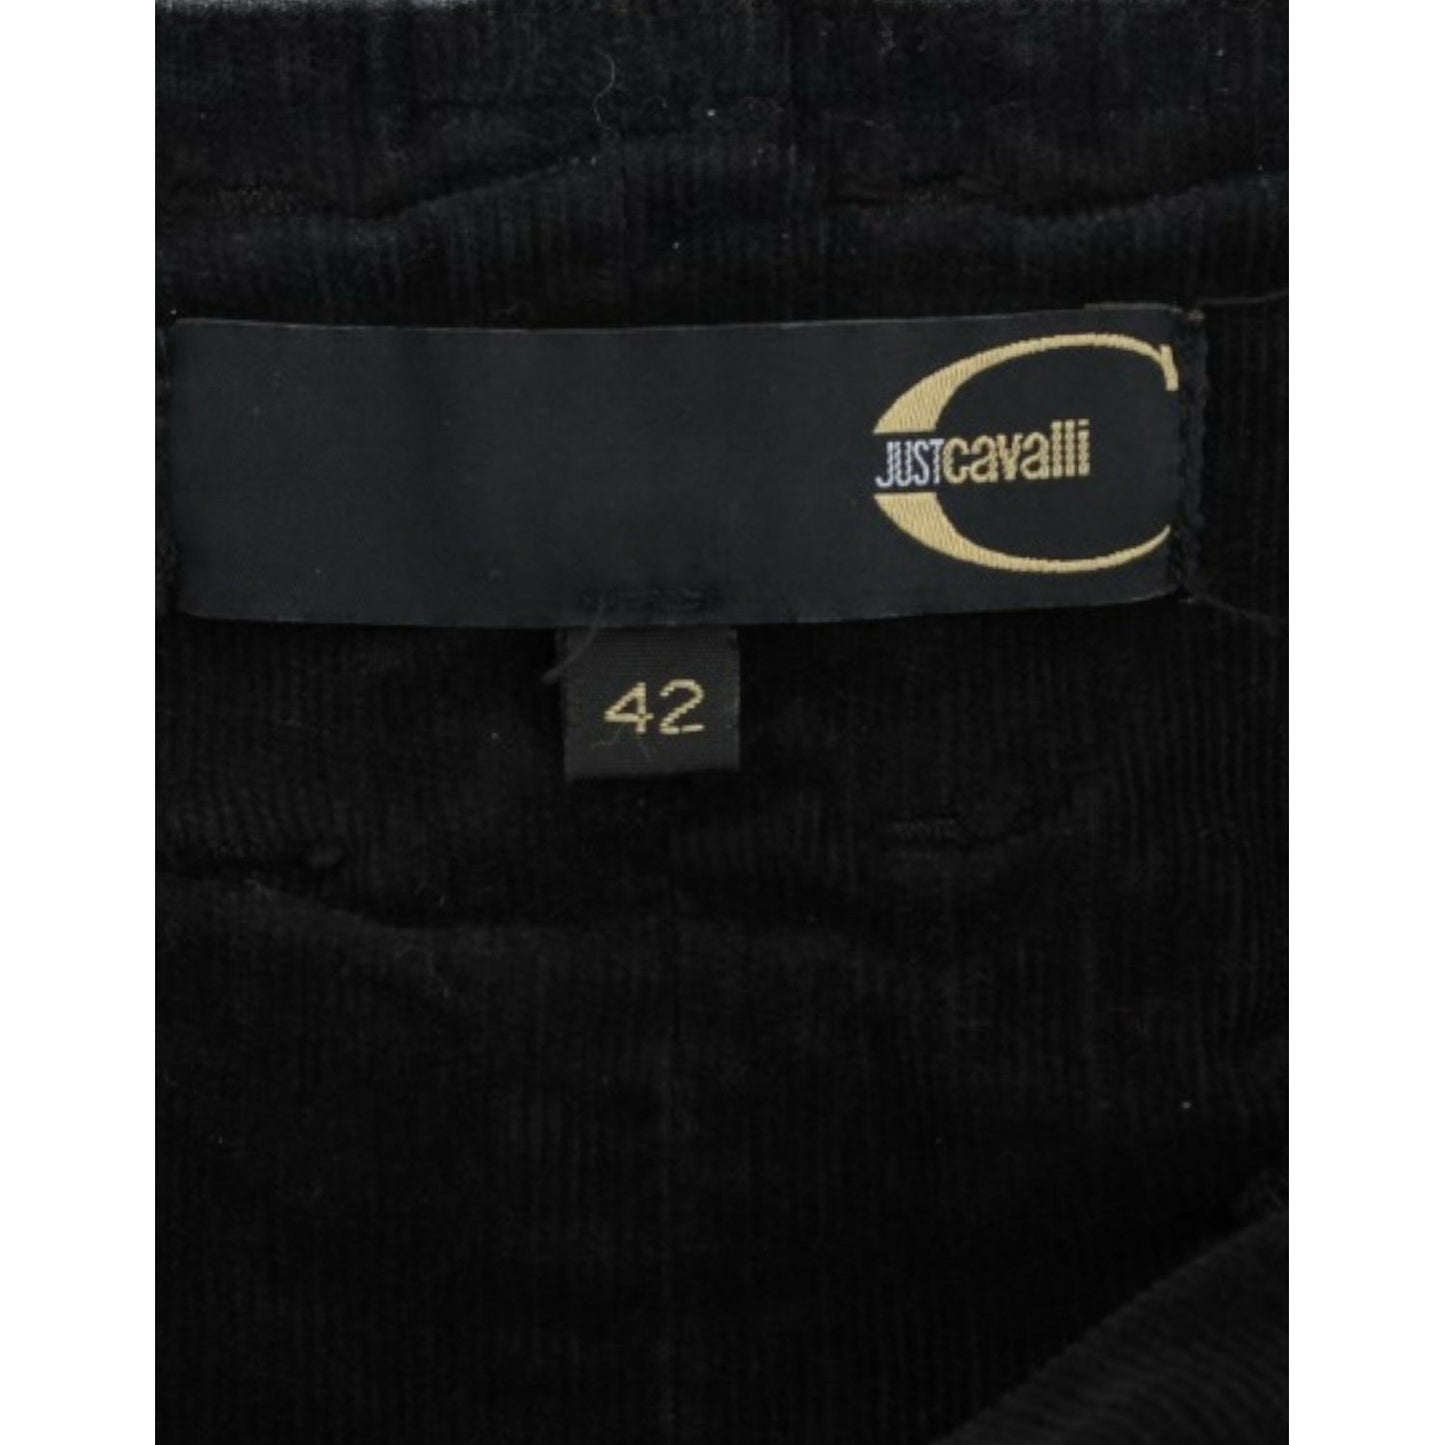 Cavalli Elegant Black Pencil Skirt for Sophisticated Style black-corduroy-pencil-skirt 9195-black-corduroy-pencil-skirt-6-scaled-91a84b9f-887.jpg